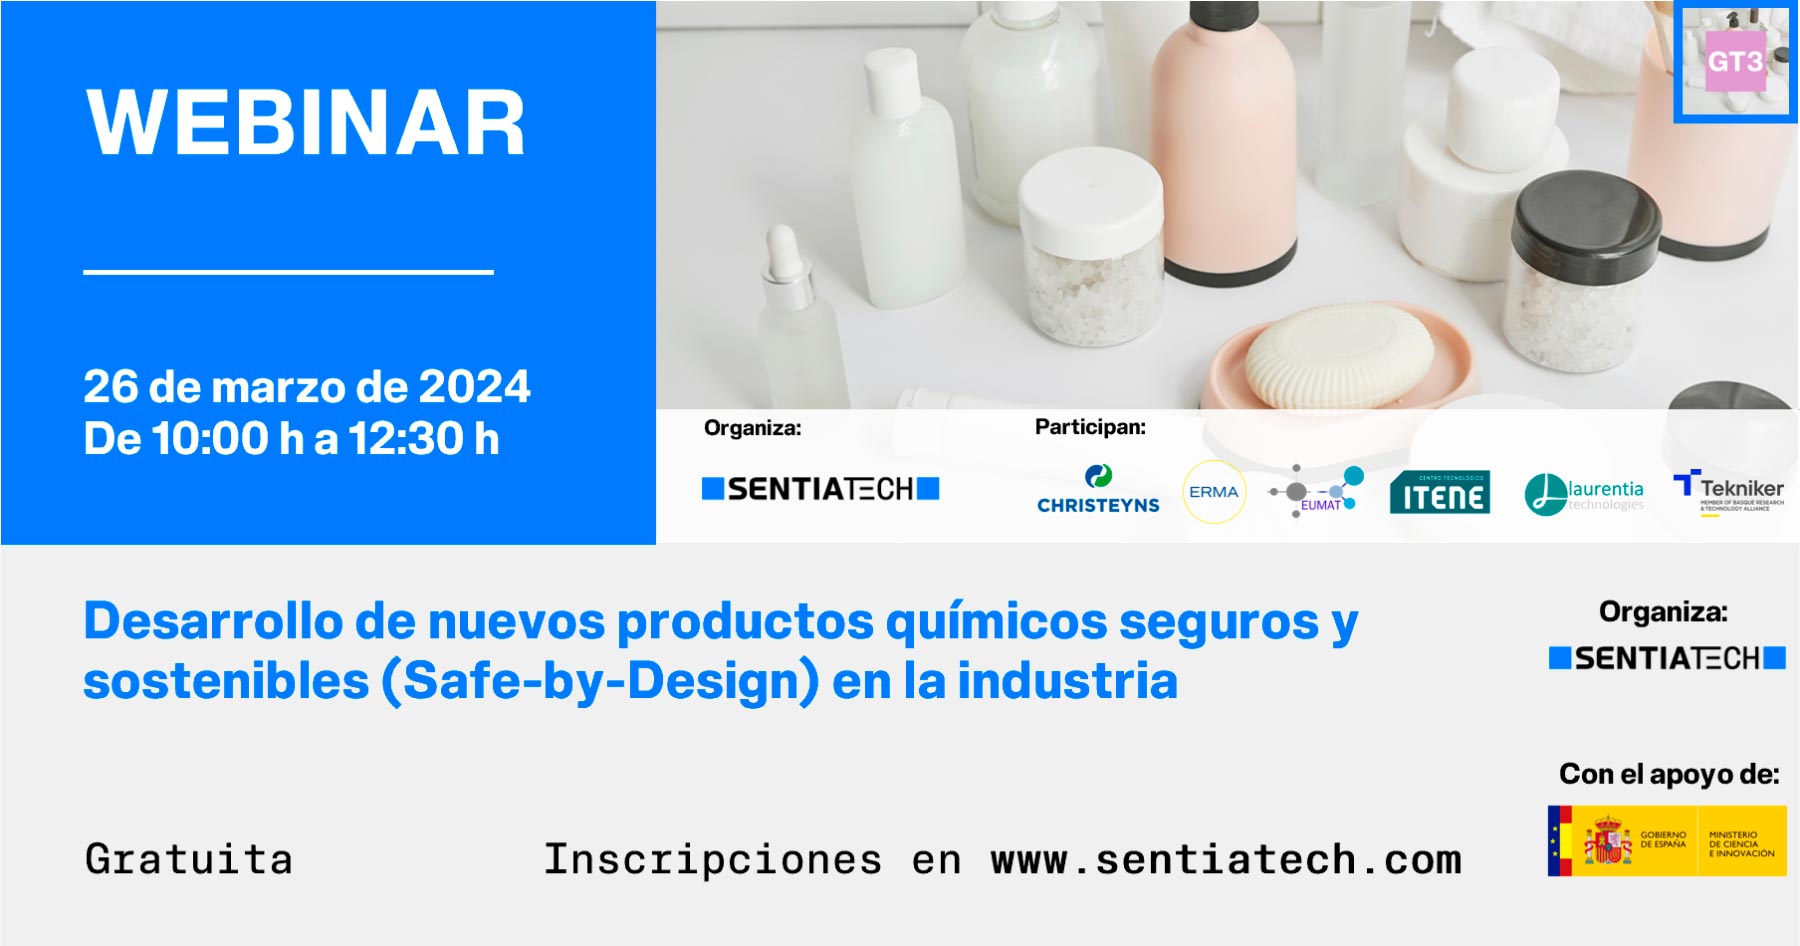 Banner del webinar del GT3 sobre el desarrollo de nuevos productos químicos seguros y sostenibles (Safe-by-Design) en la industria, organizado por SENTIATECH y celebrado de forma online el 26 de marzo de 2024.